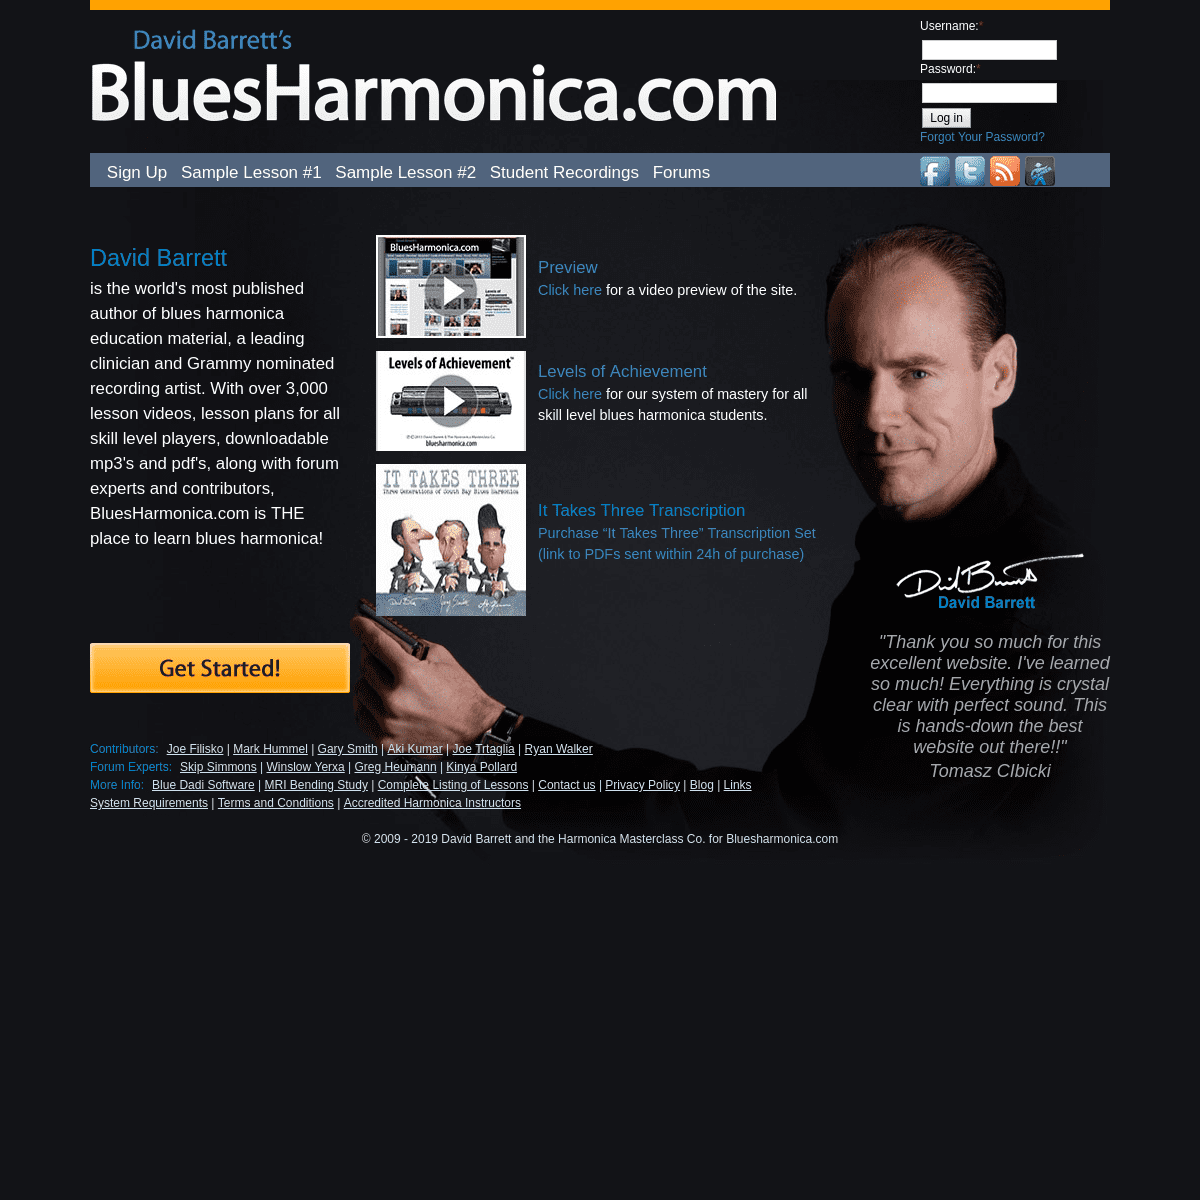 A complete backup of bluesharmonica.com